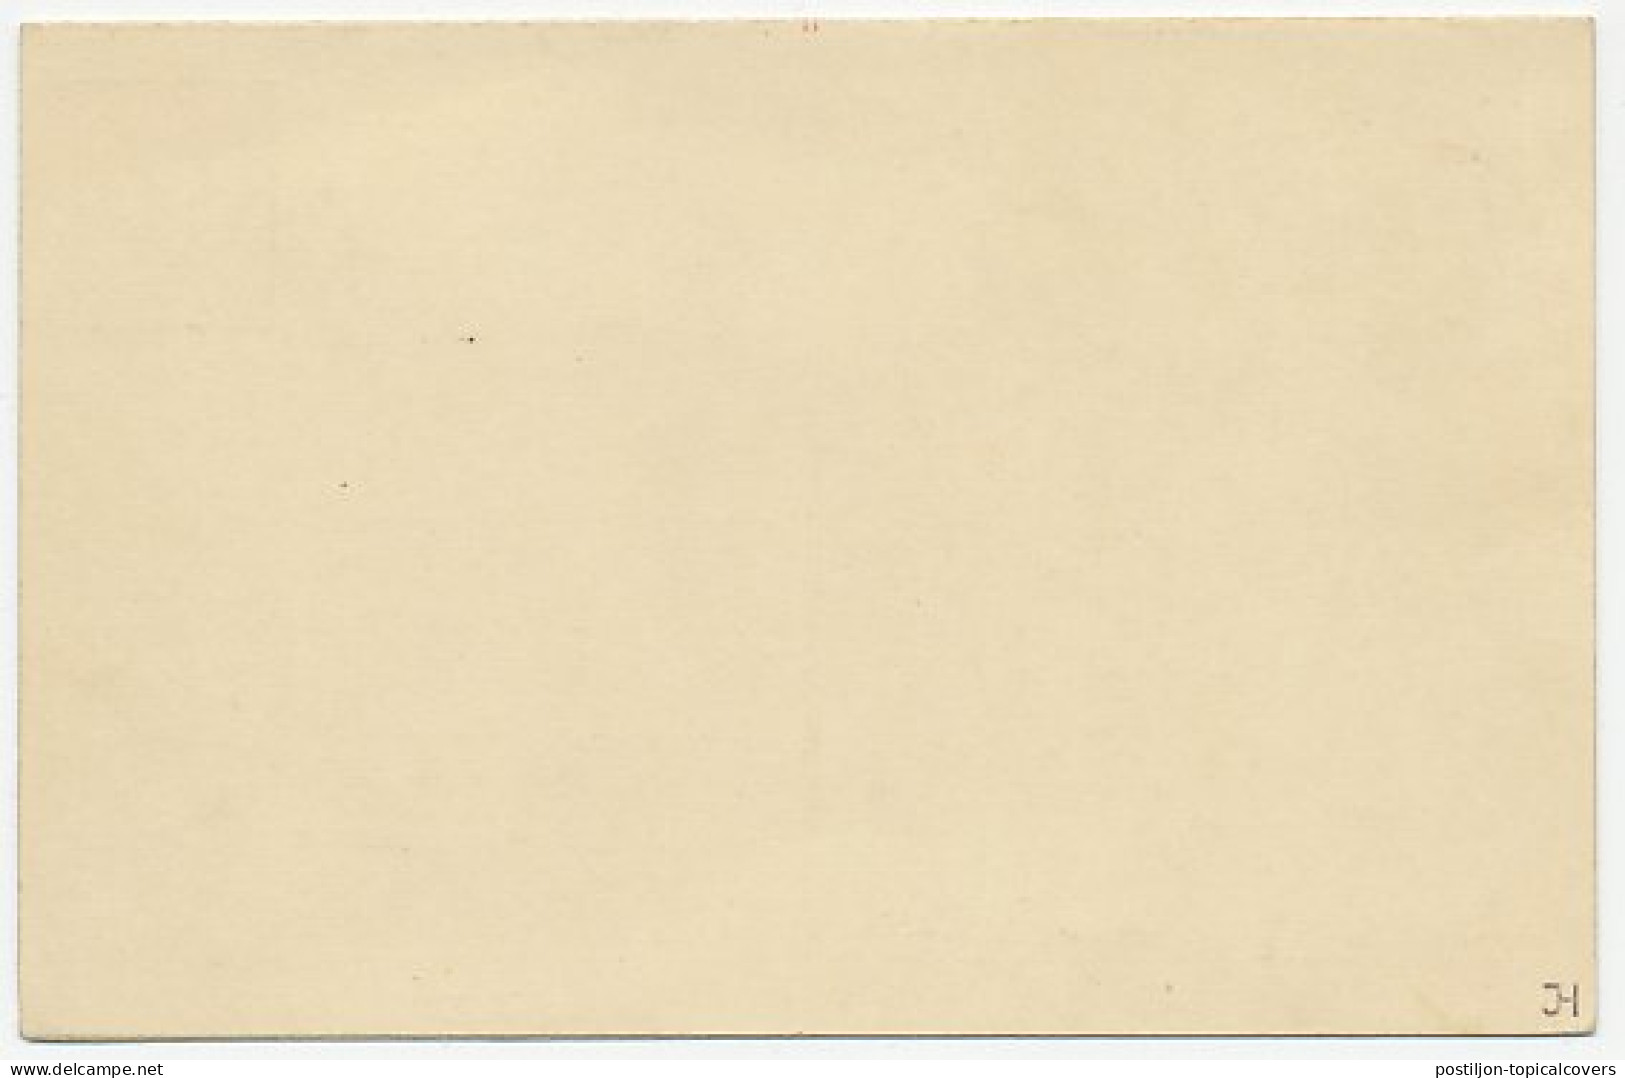 Briefkaart G. 225 - Ganzsachen